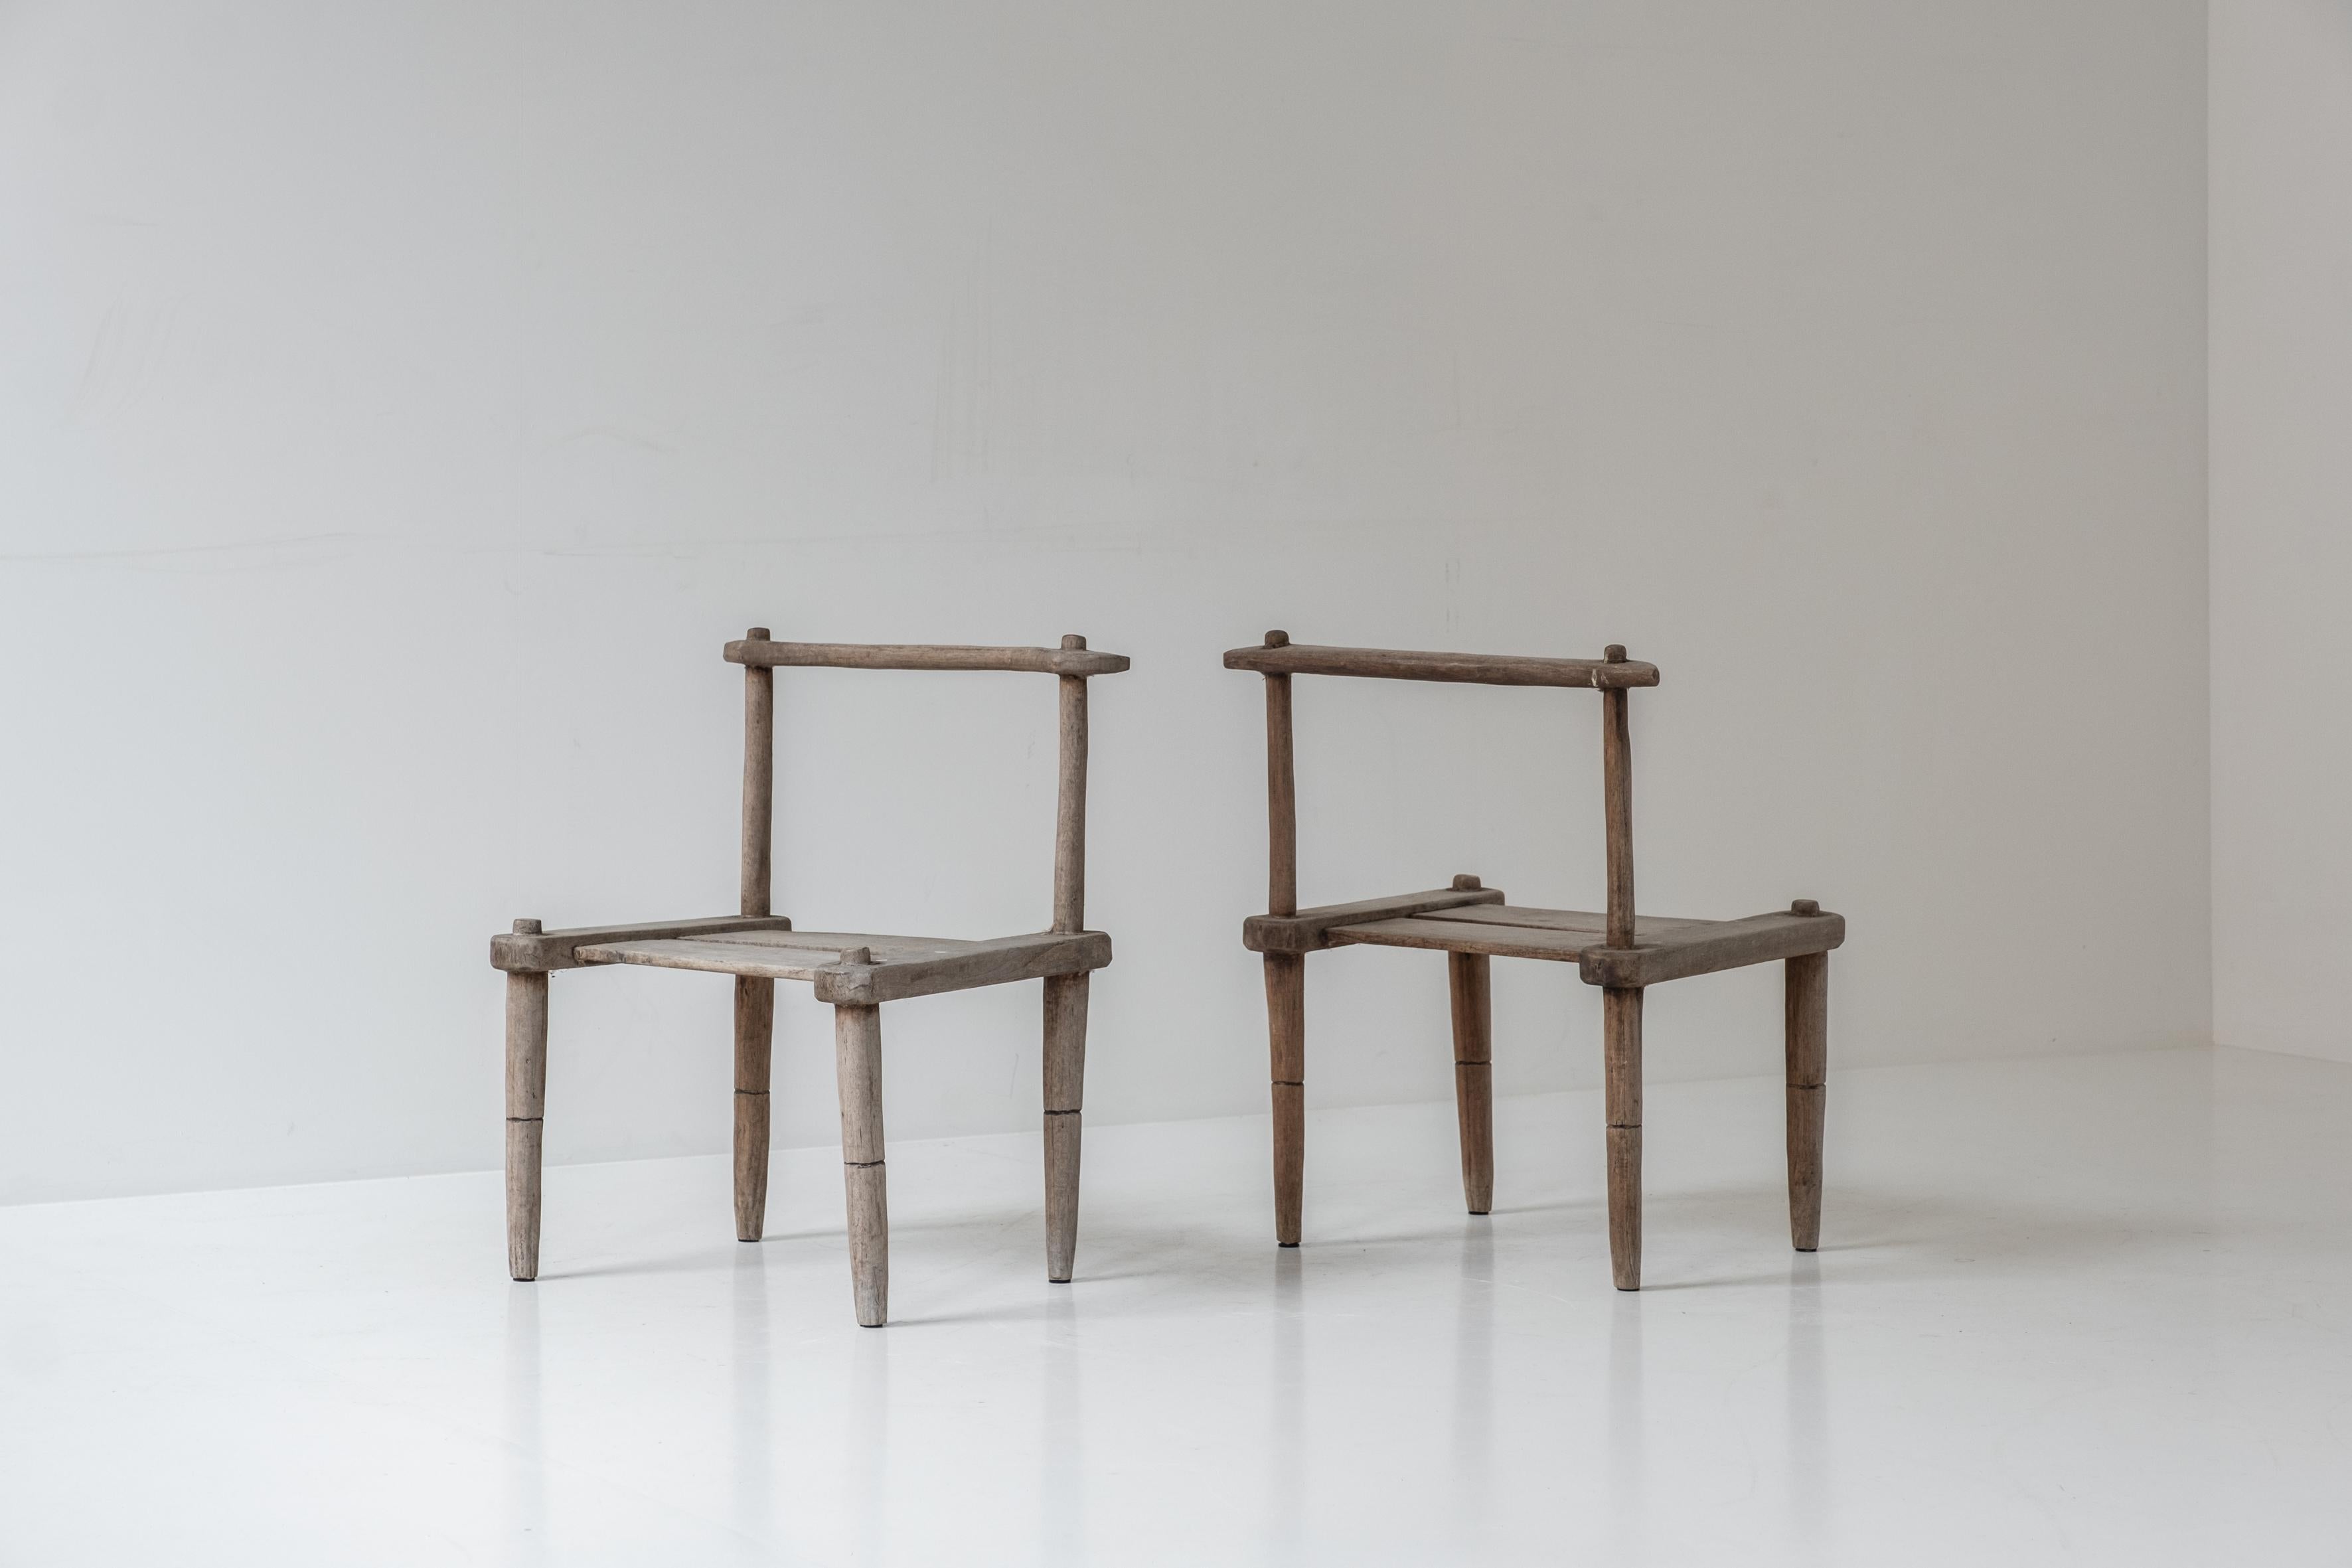 Organische niedrige Stühle, entworfen und handgefertigt in den 1950er Jahren. Der Kunsthandwerker ließ sich von der Wabi-Sabi-Philosophie inspirieren, in deren Mittelpunkt die Akzeptanz von Vergänglichkeit und Unvollkommenheit steht. Originale